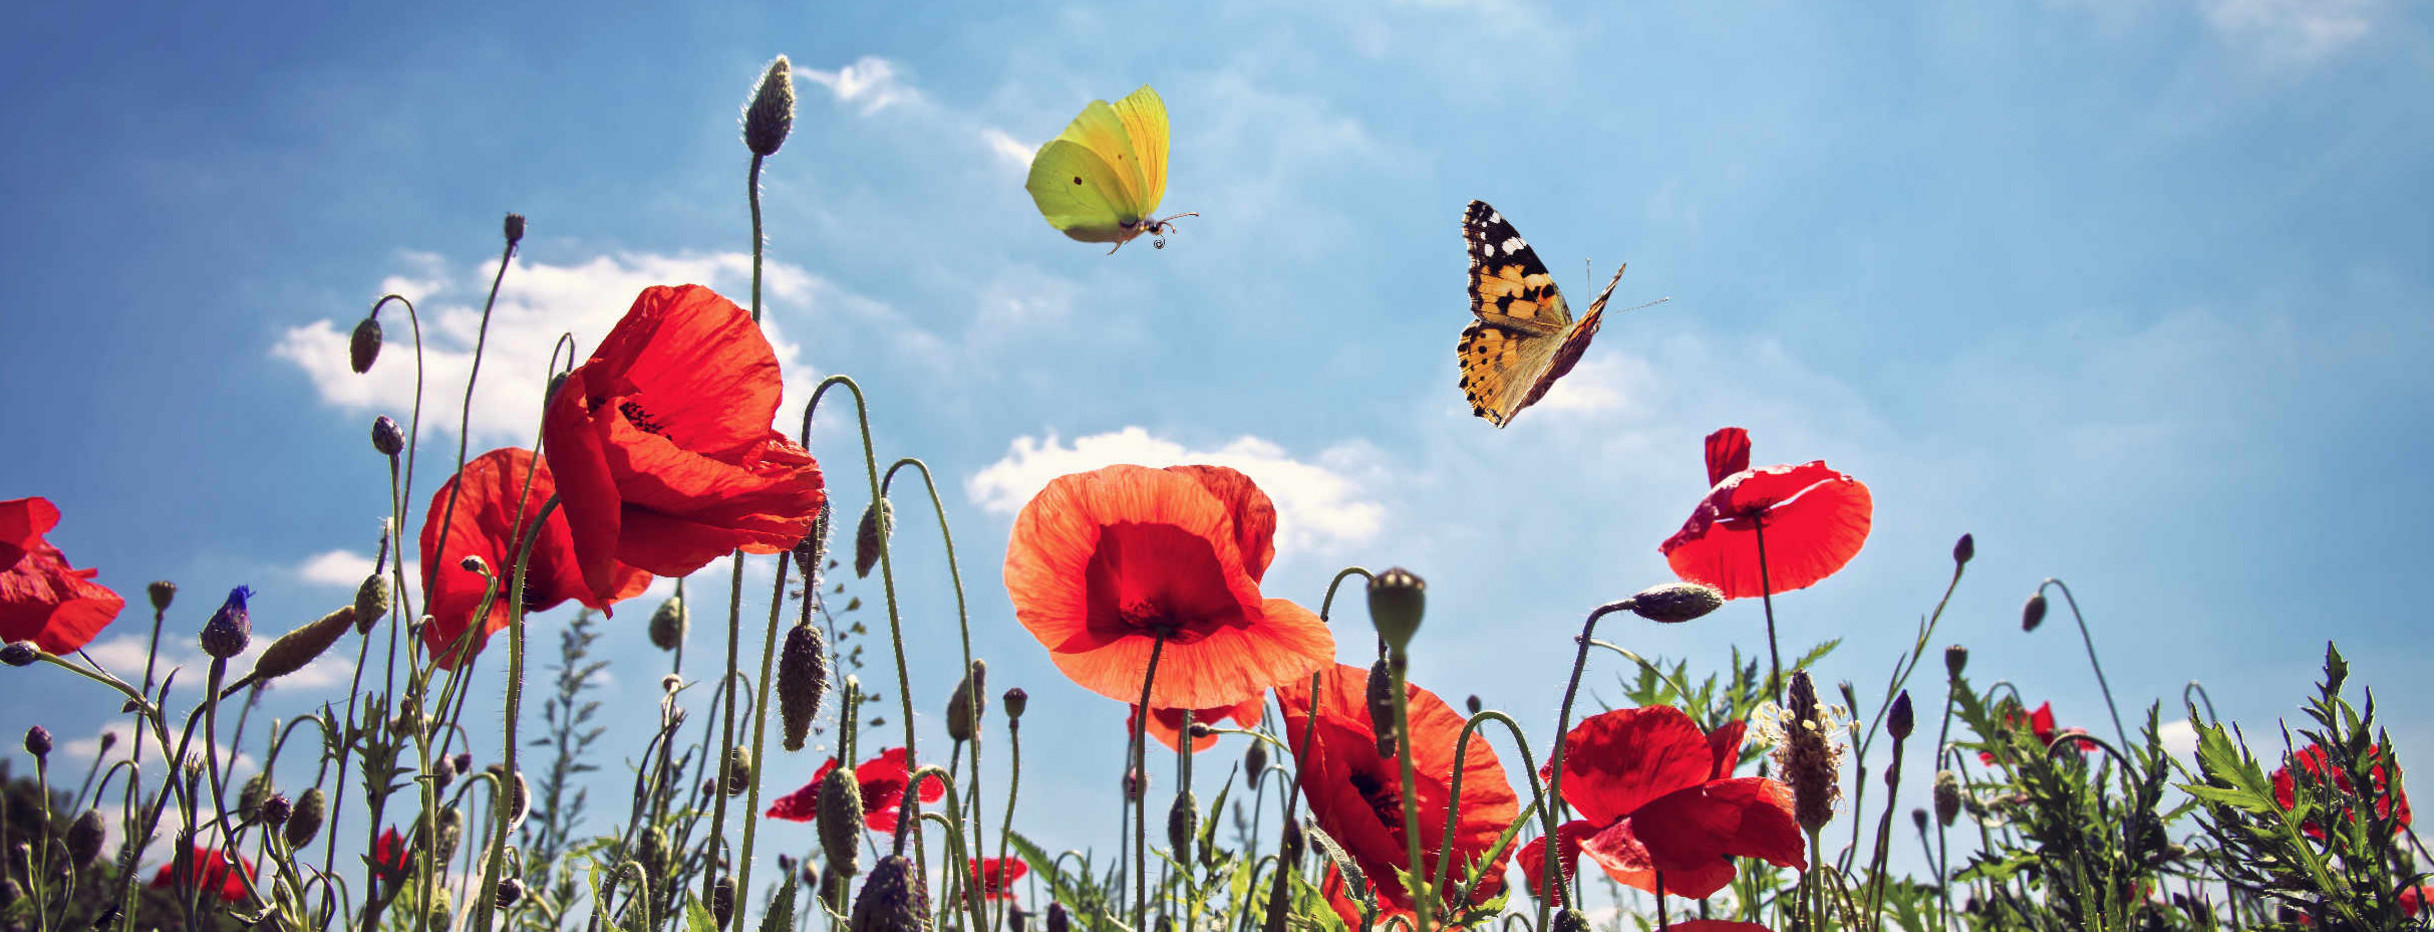 Schmetterlinge fliegen über eine Wiese mit Mohnblumen